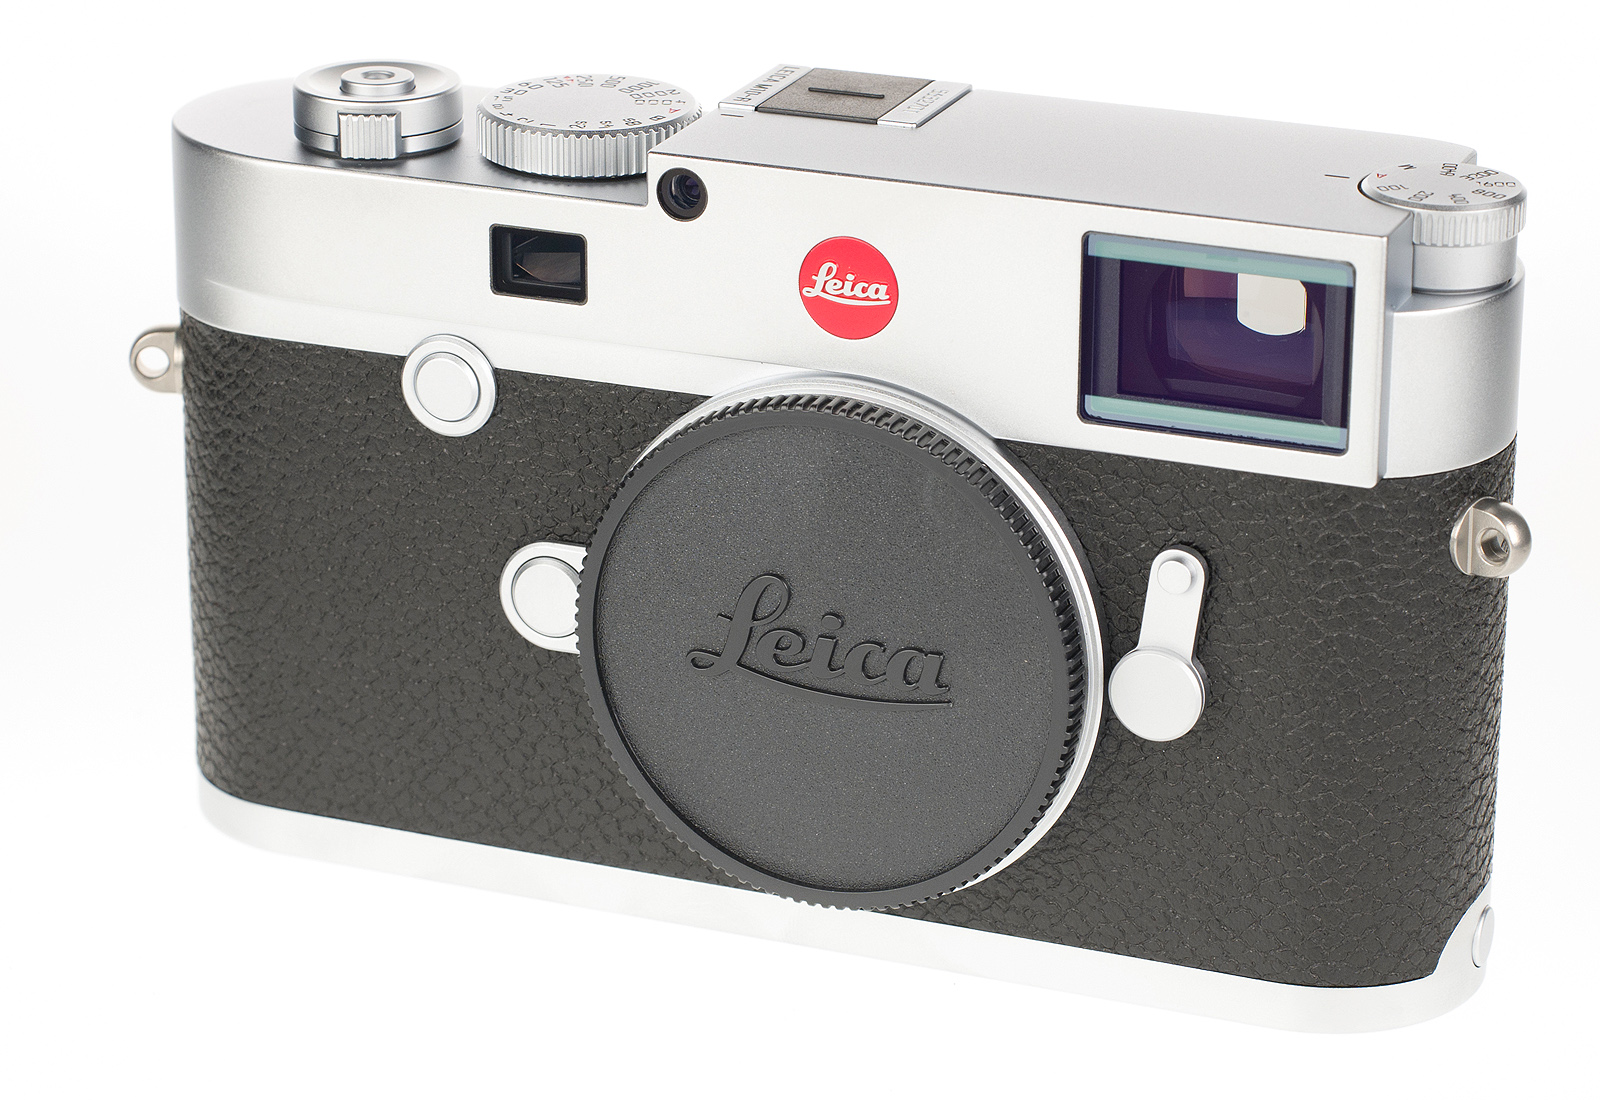 Leica M10-R, silver chrome 20003